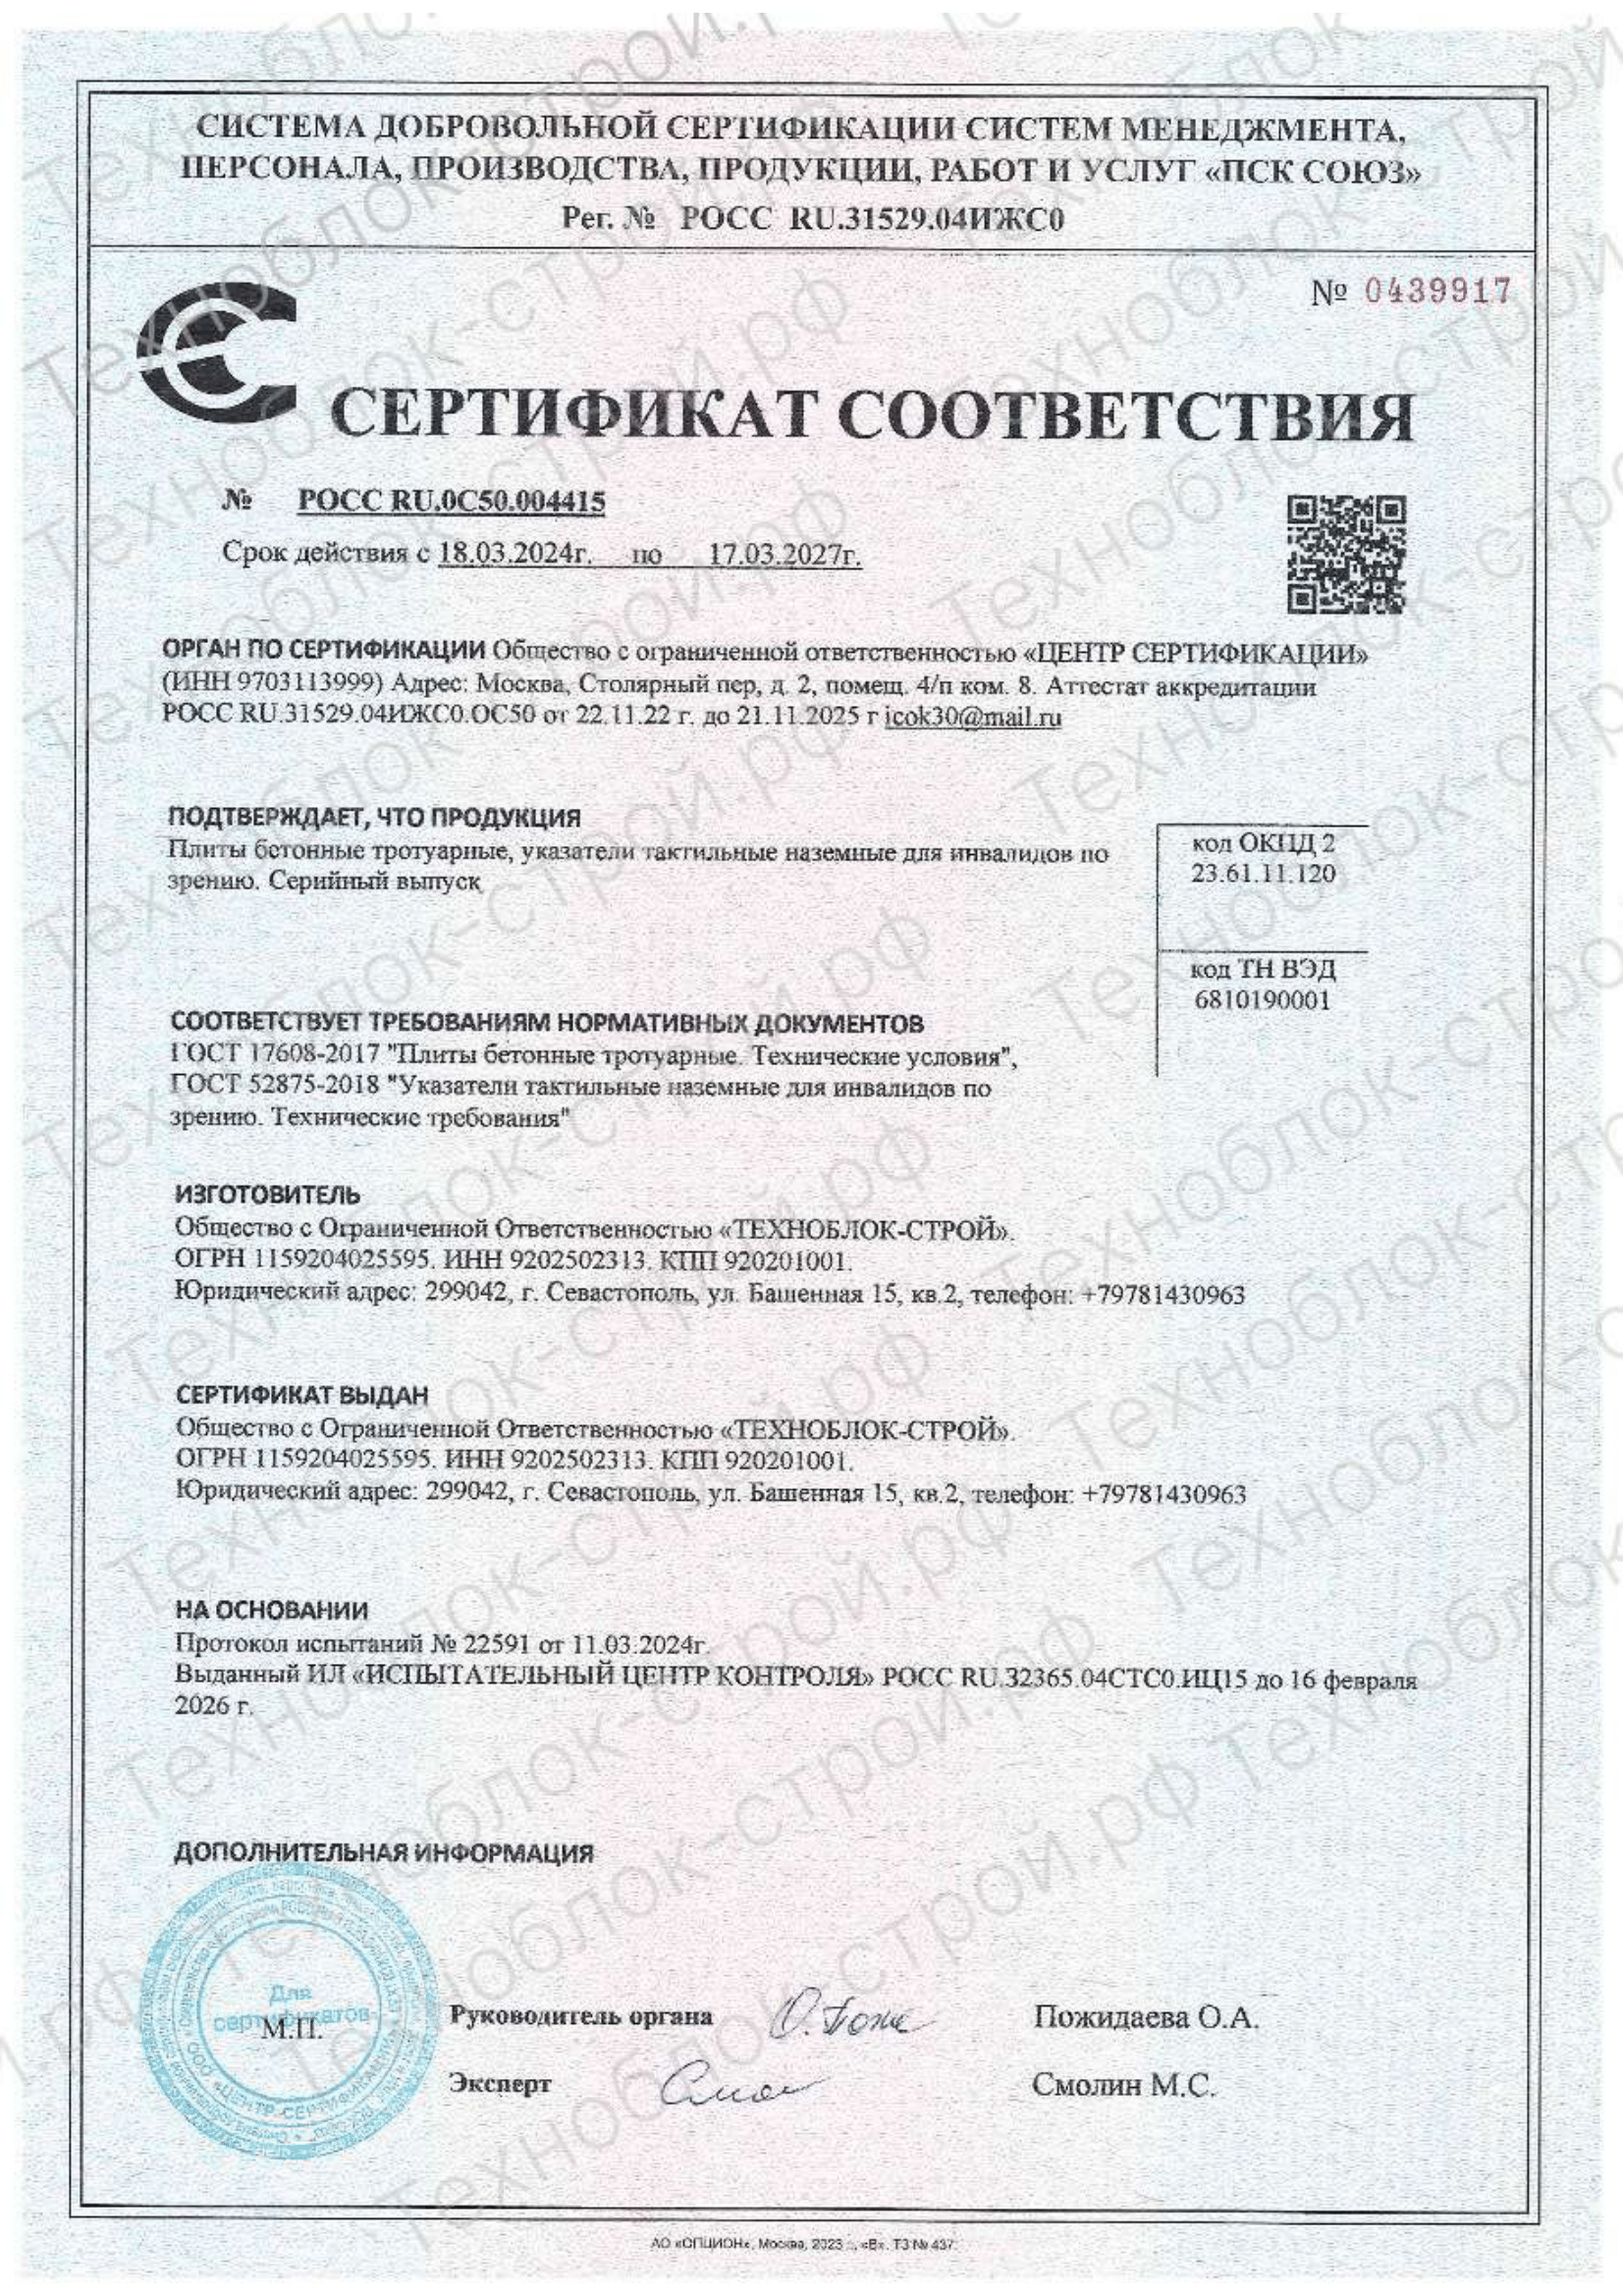 Сертификат соответствия на продукцию "Плитка бетонная тротуарная тактильная"